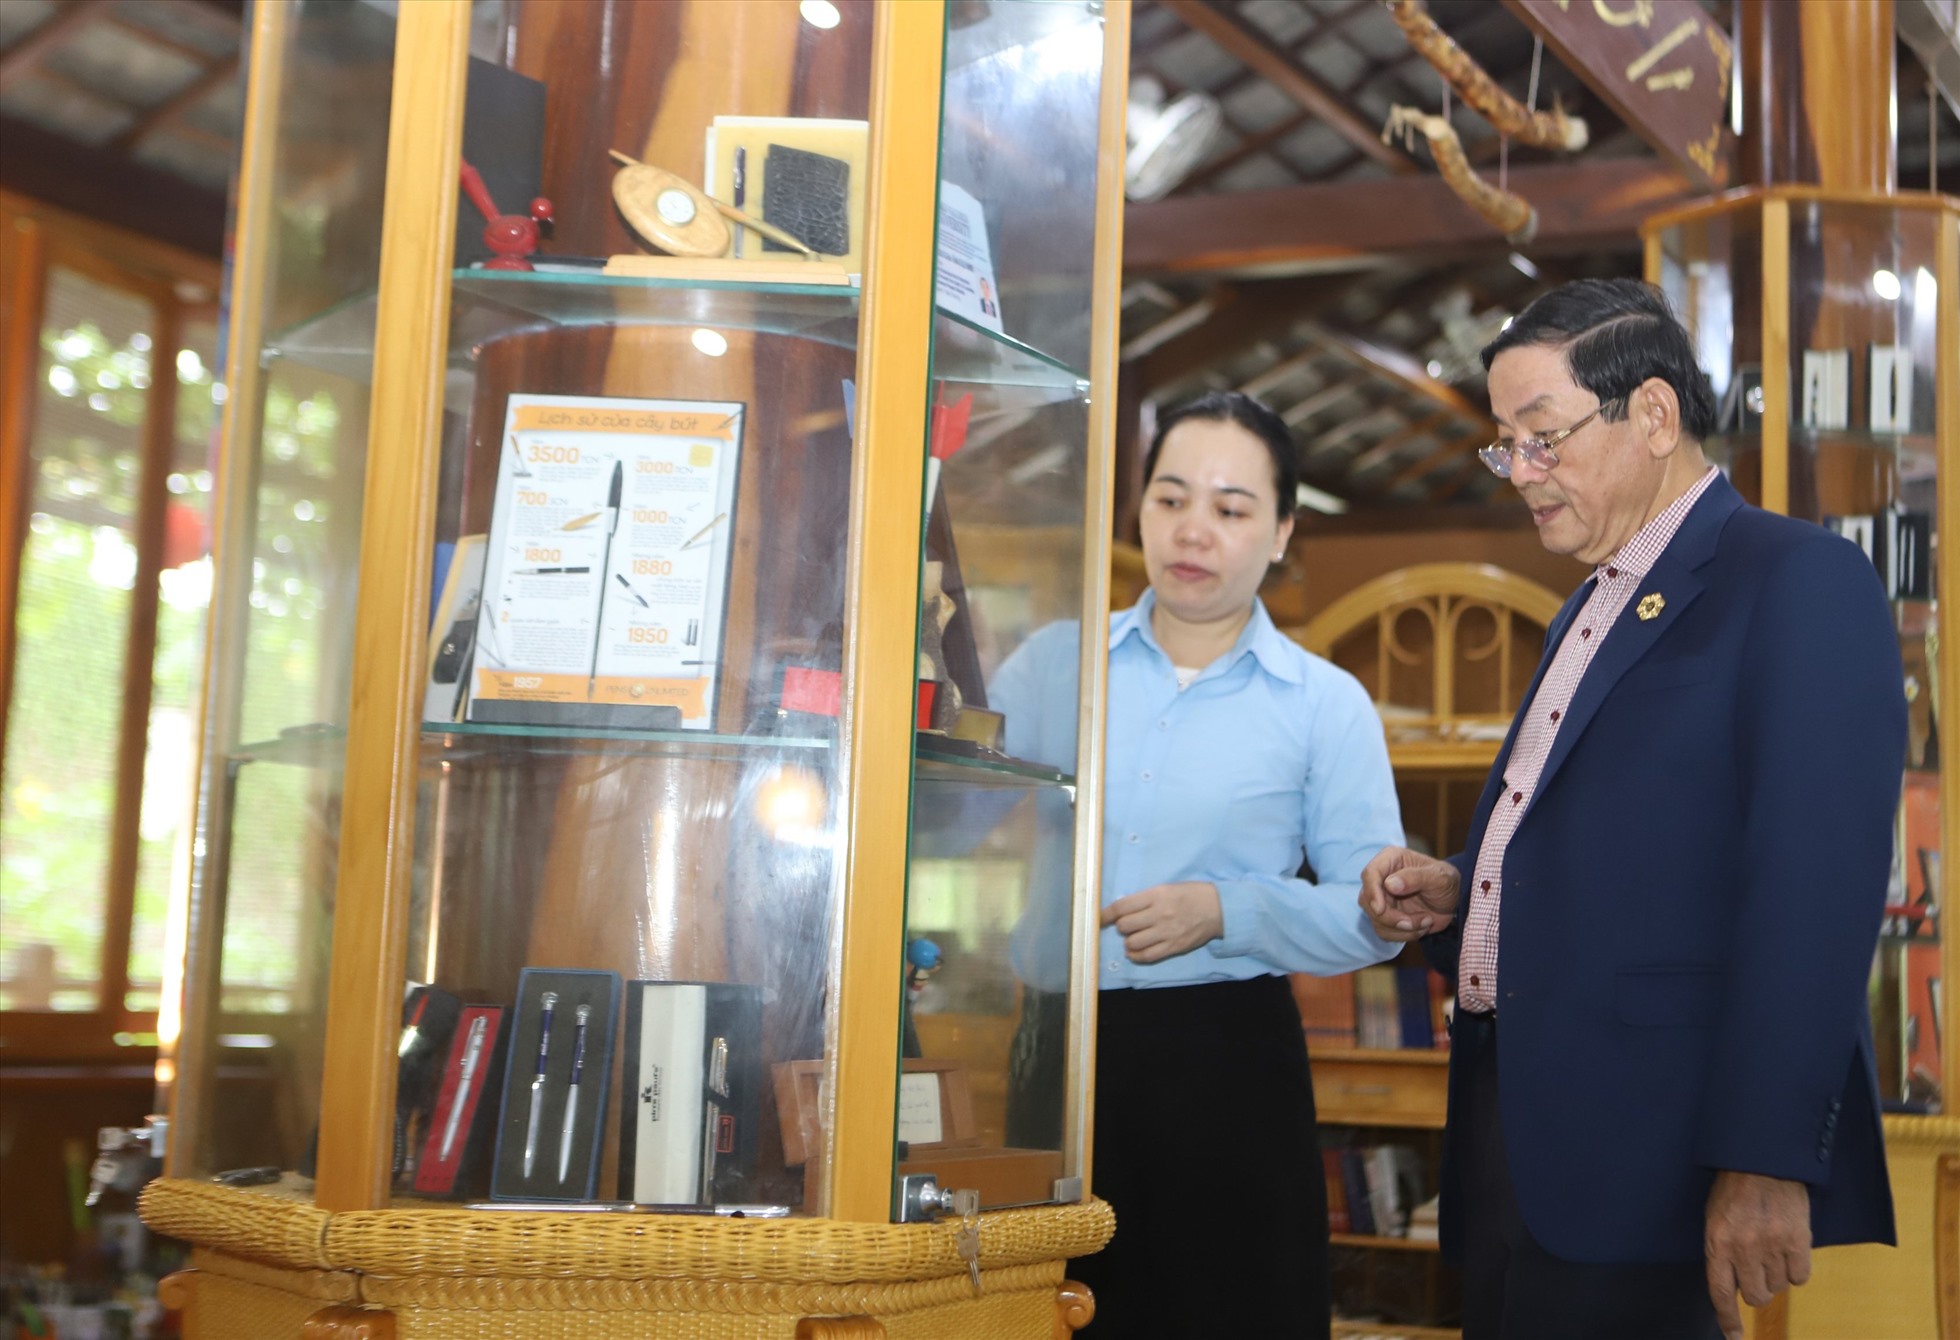 Năm 2017 bộ sưu tập của ông Xáng được tổ chức Kỷ lục Việt Nam công nhận kỷ lục Bộ sưu tập Bút với số lượng nhiều nhất. Ảnh: Thu Cúc